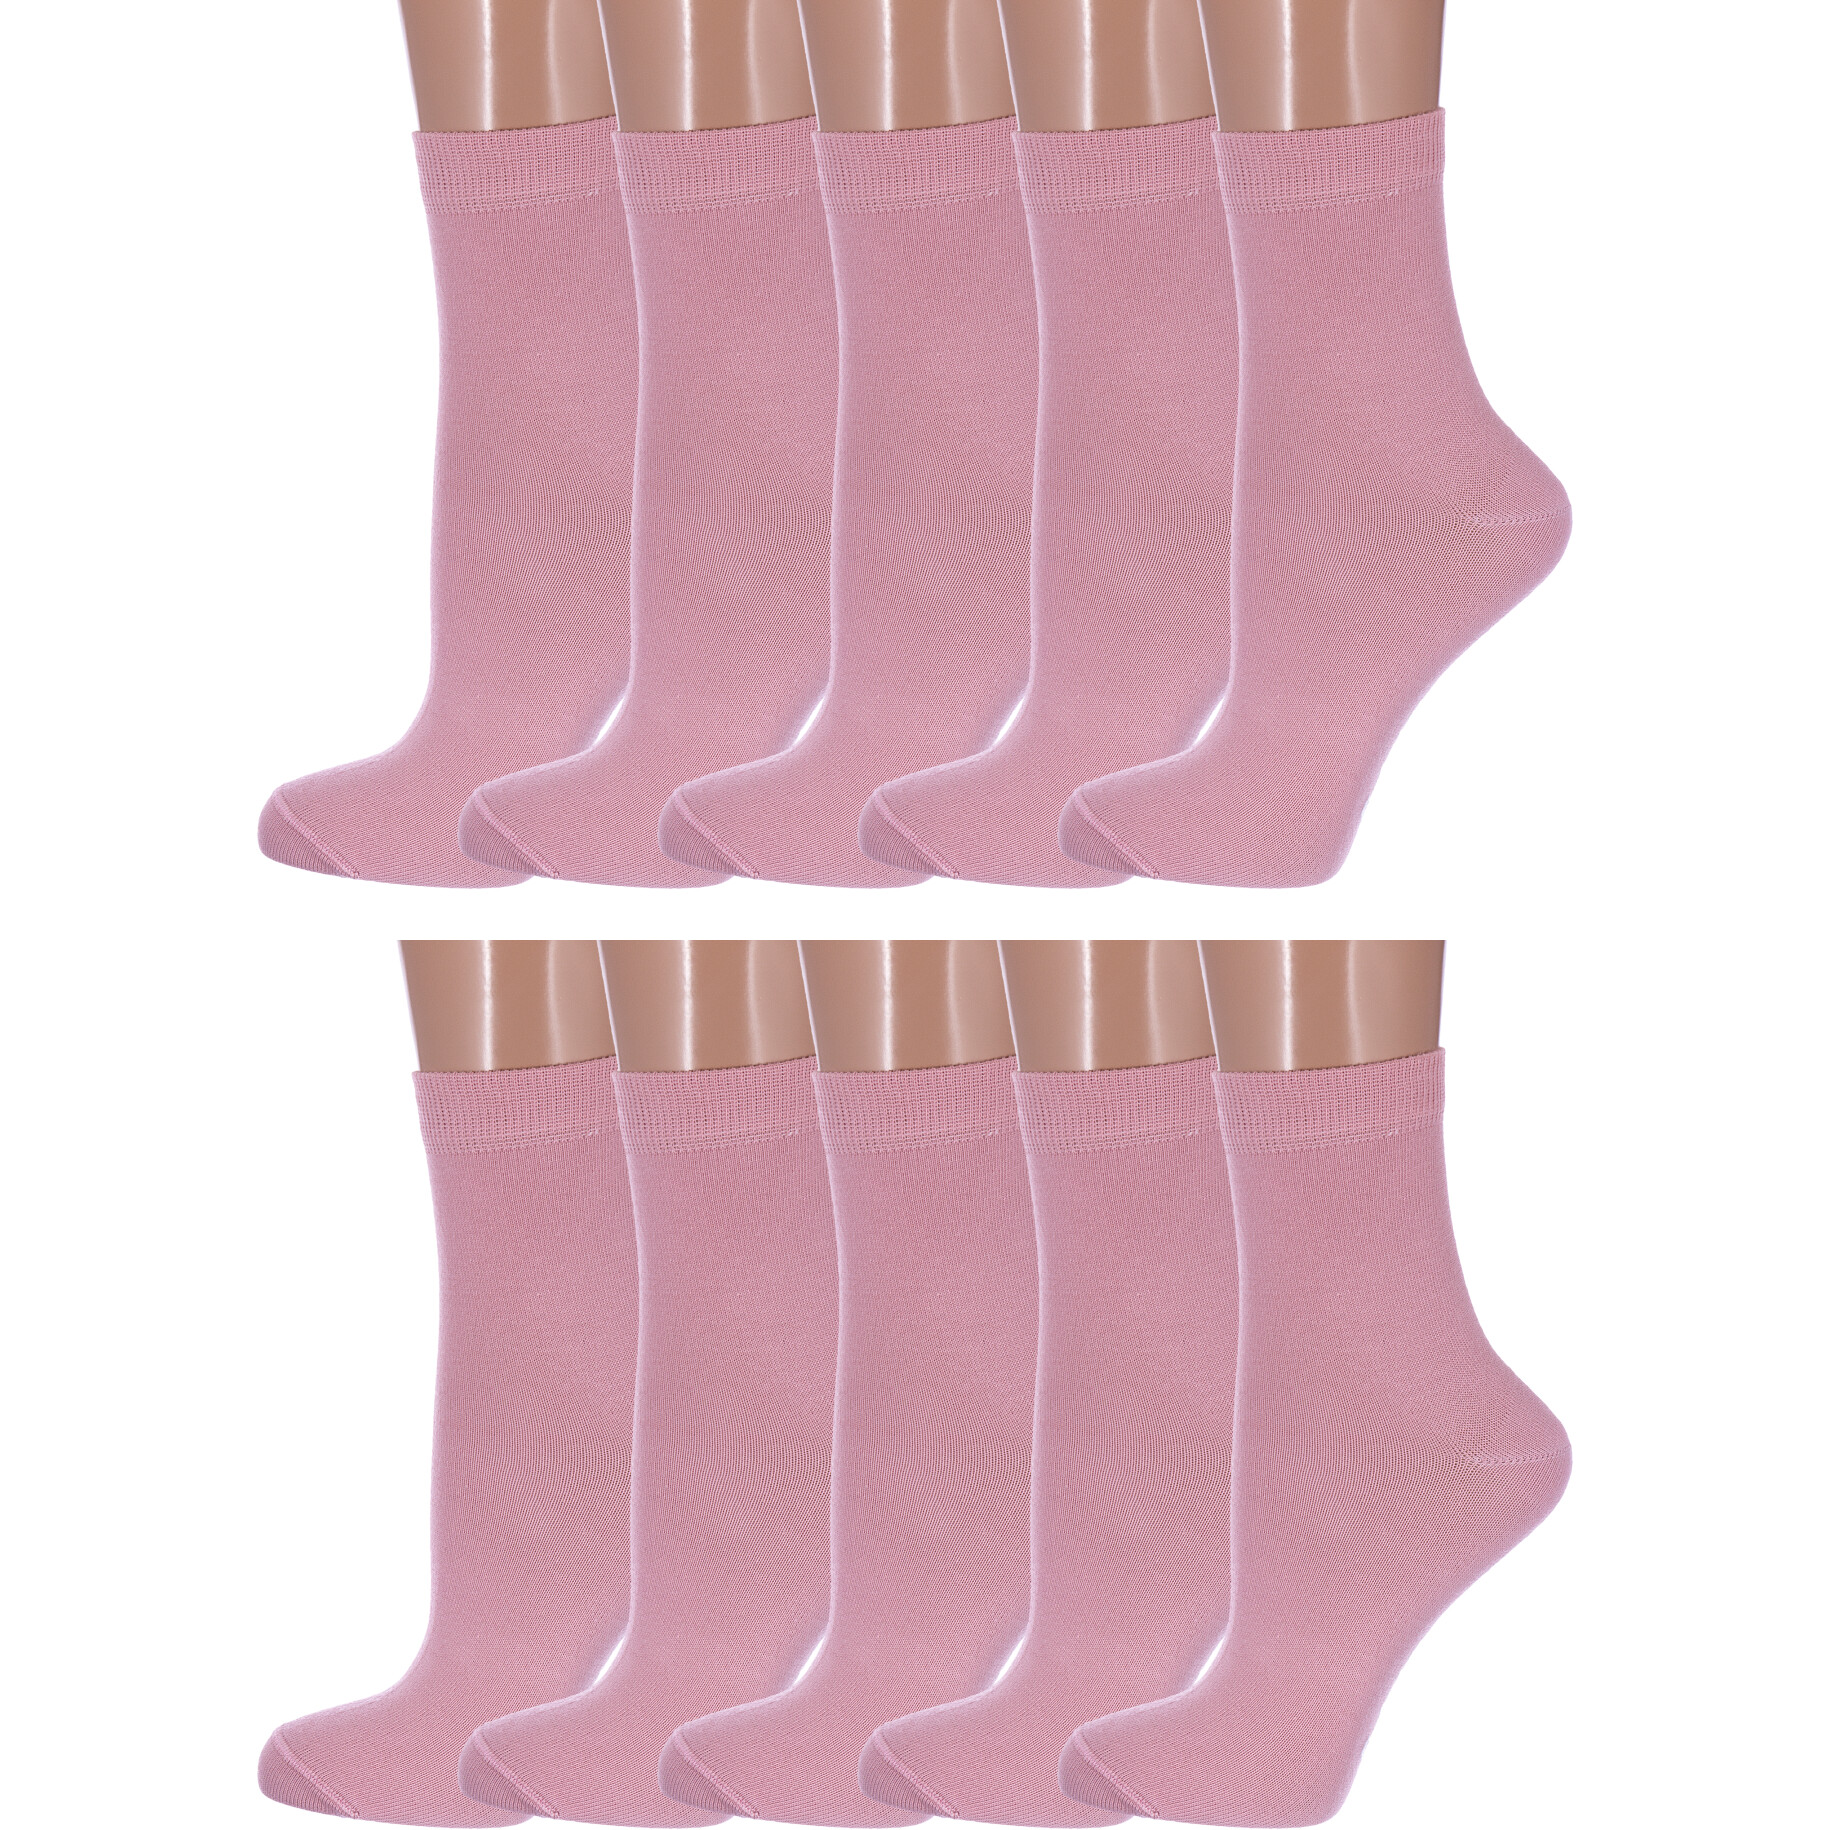 Носки детские NOSMAG 10-5С-11СП, рис. 000, светло-розовые, 8